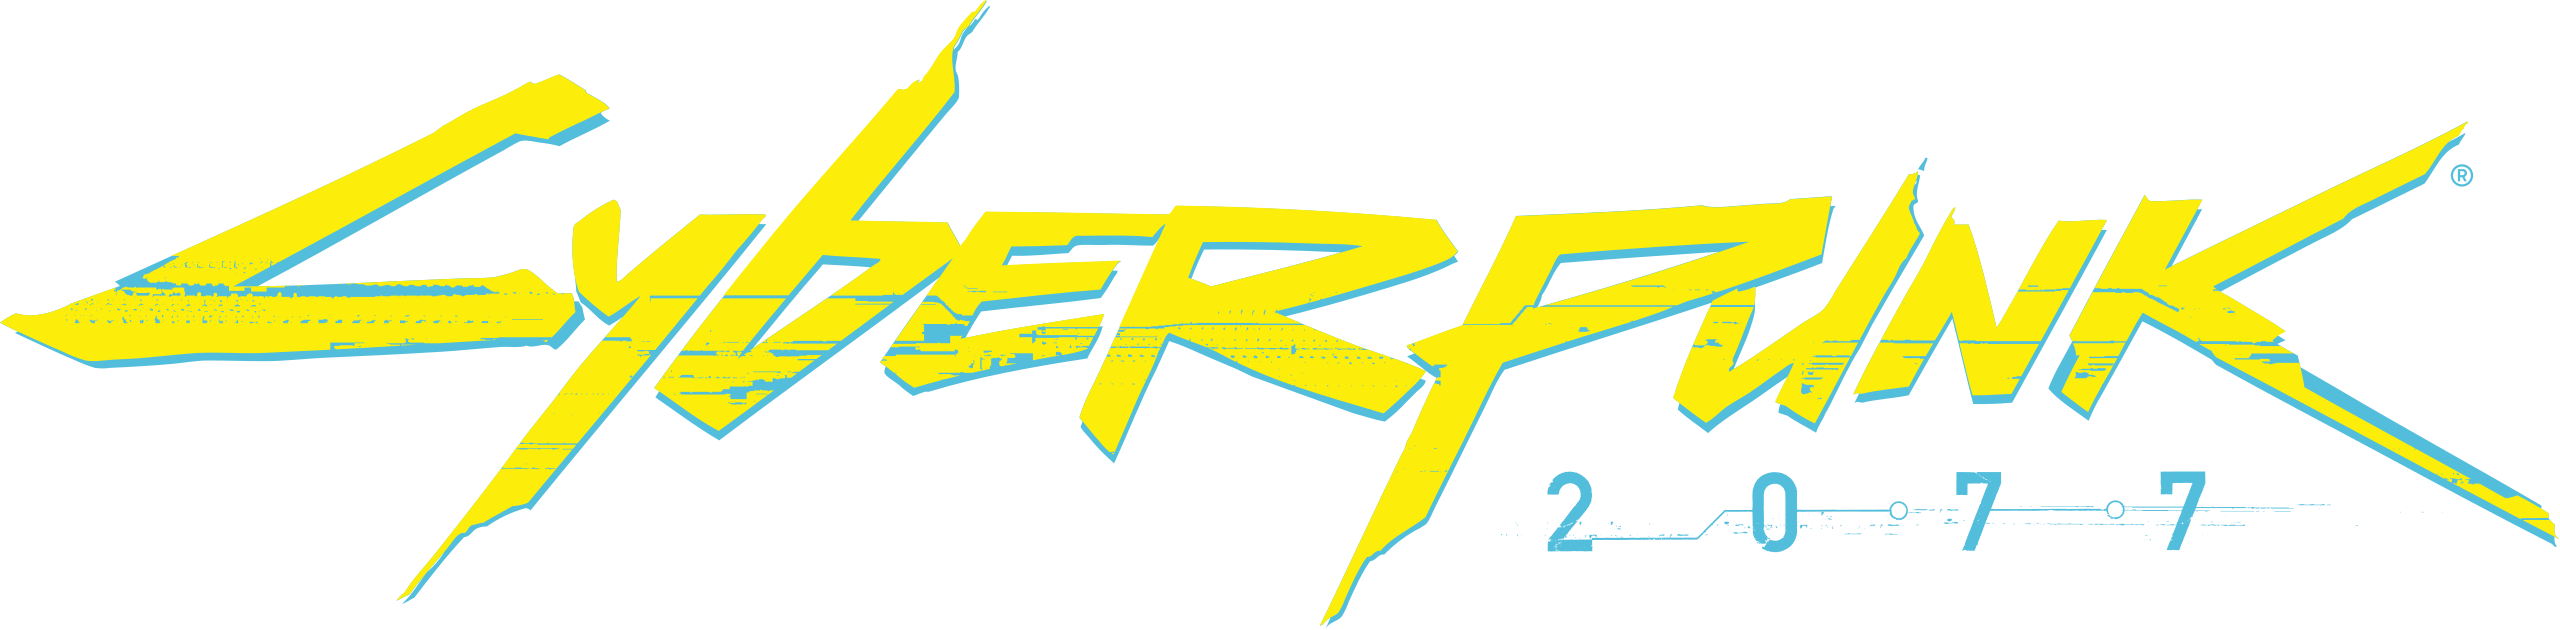 Cyberpunk_2077_logo